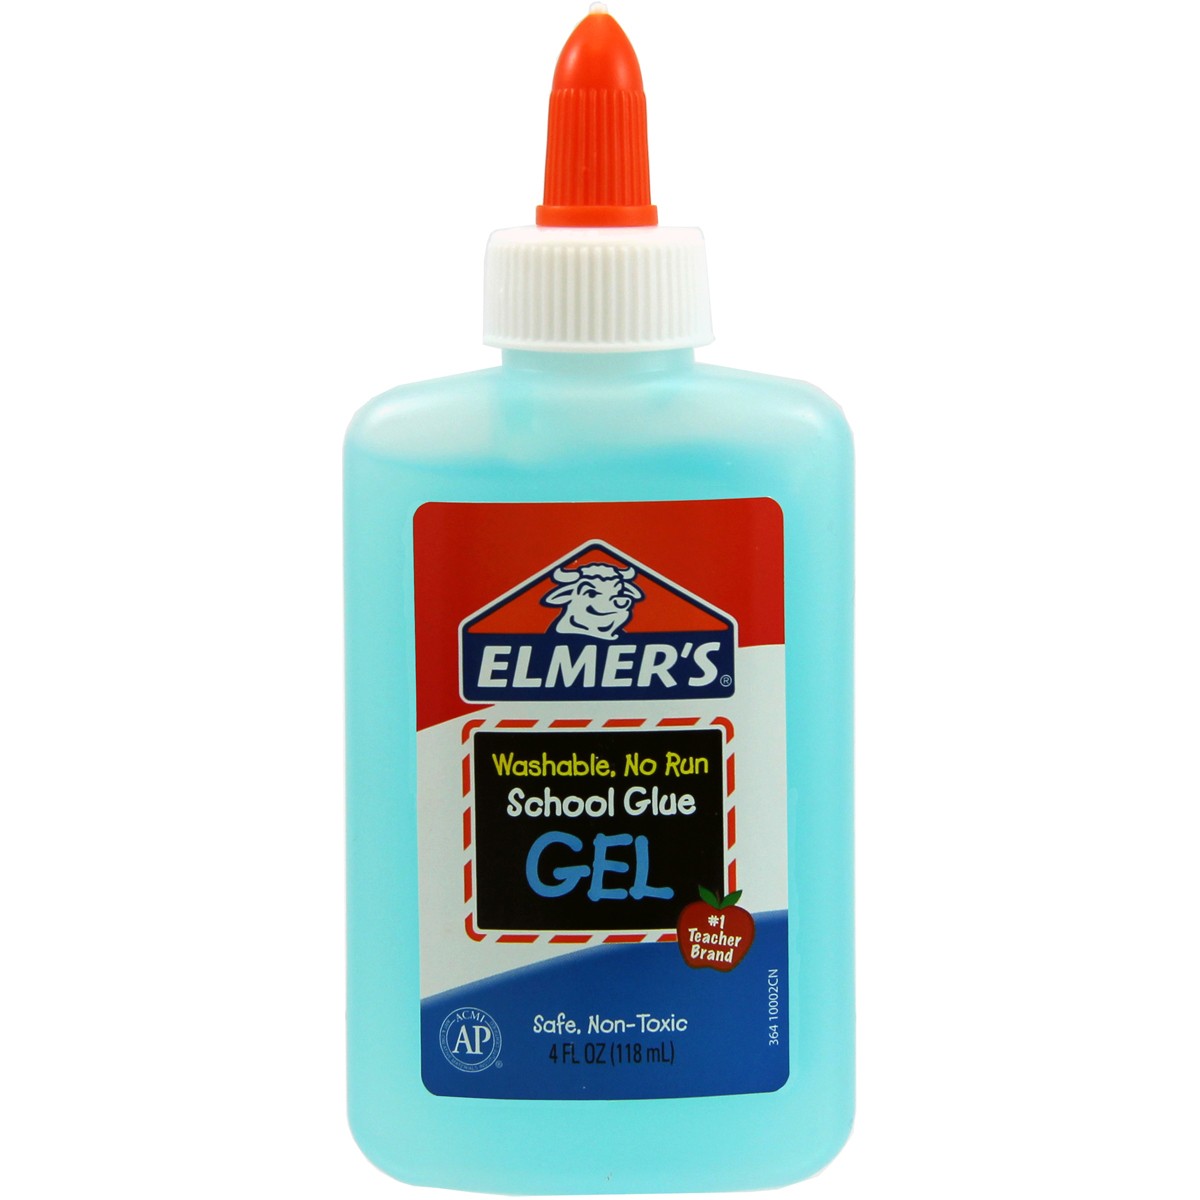 Elmers School Glue Gel 4oz